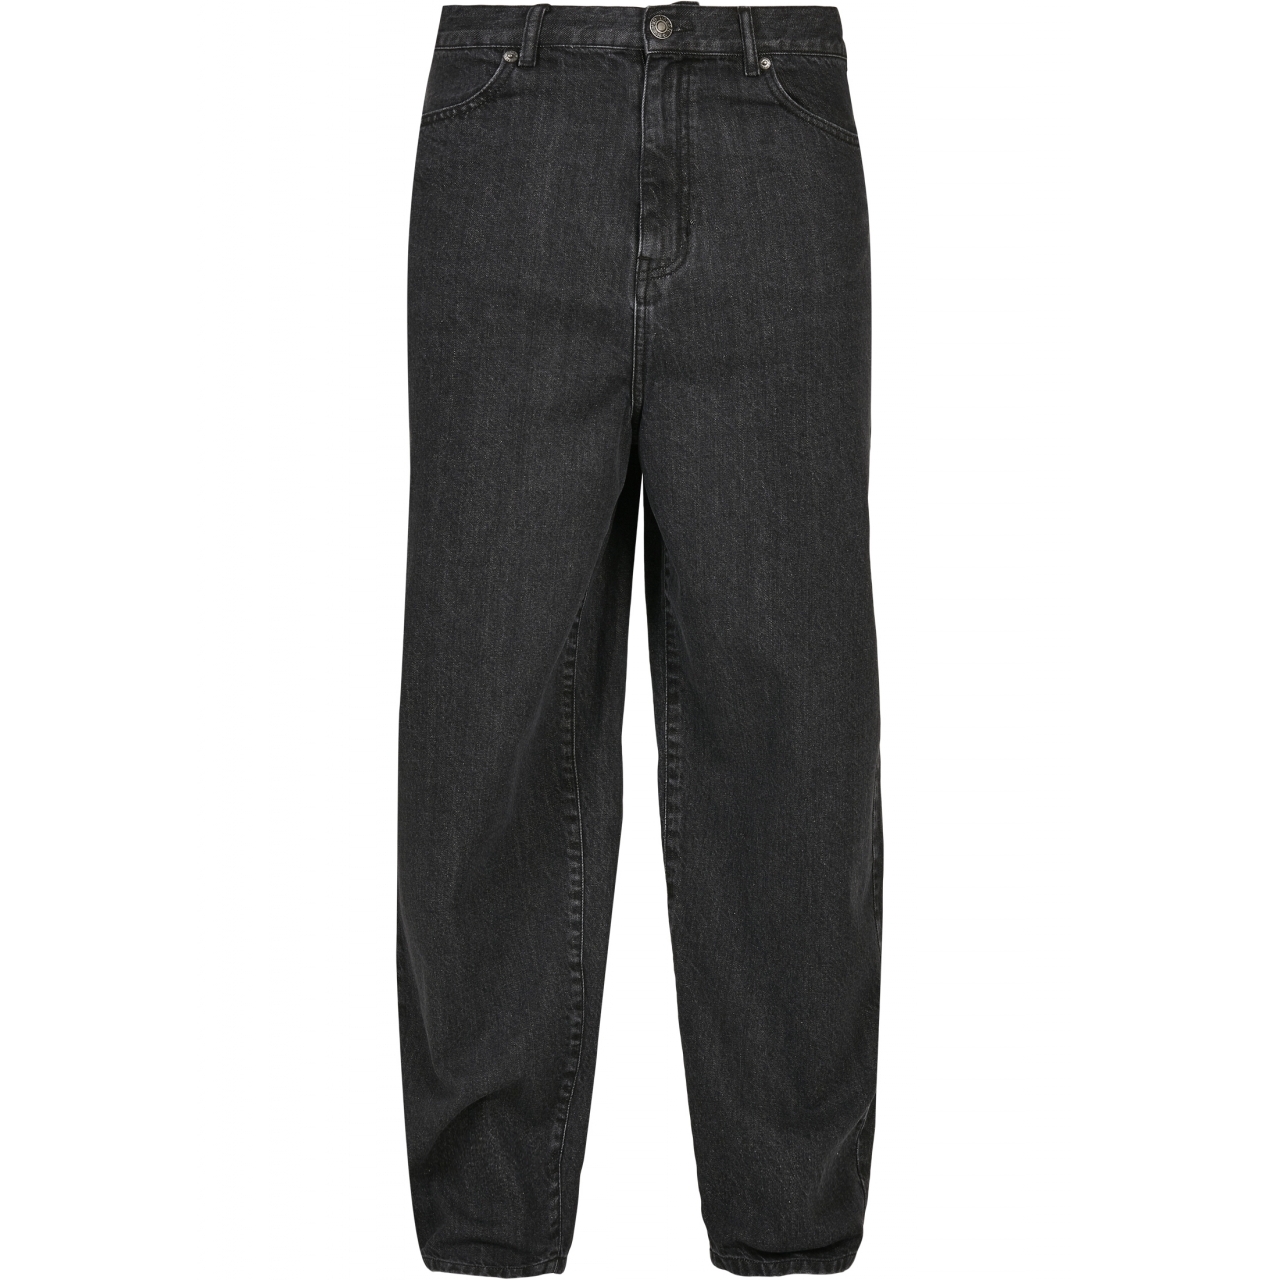 Džíny Urban Classics 90s Jeans - černé, 38